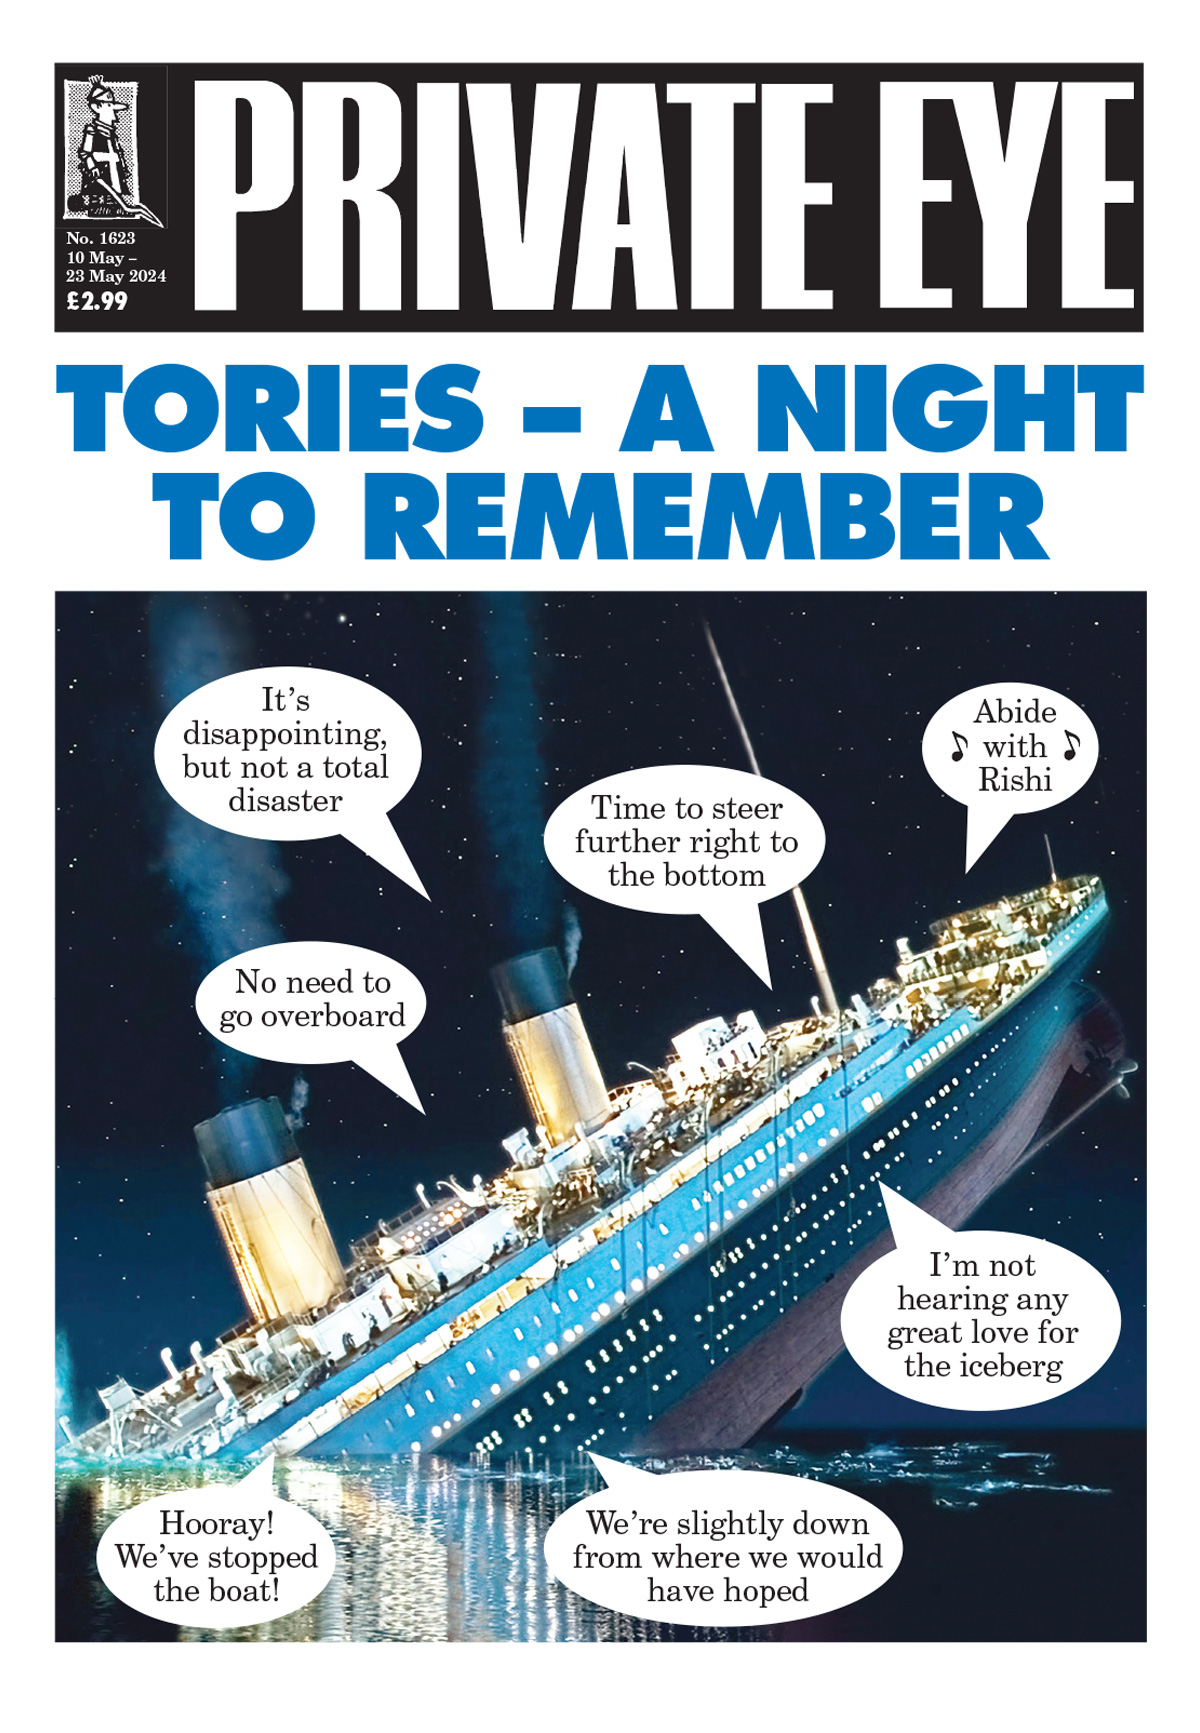 Titanic Tory MPs